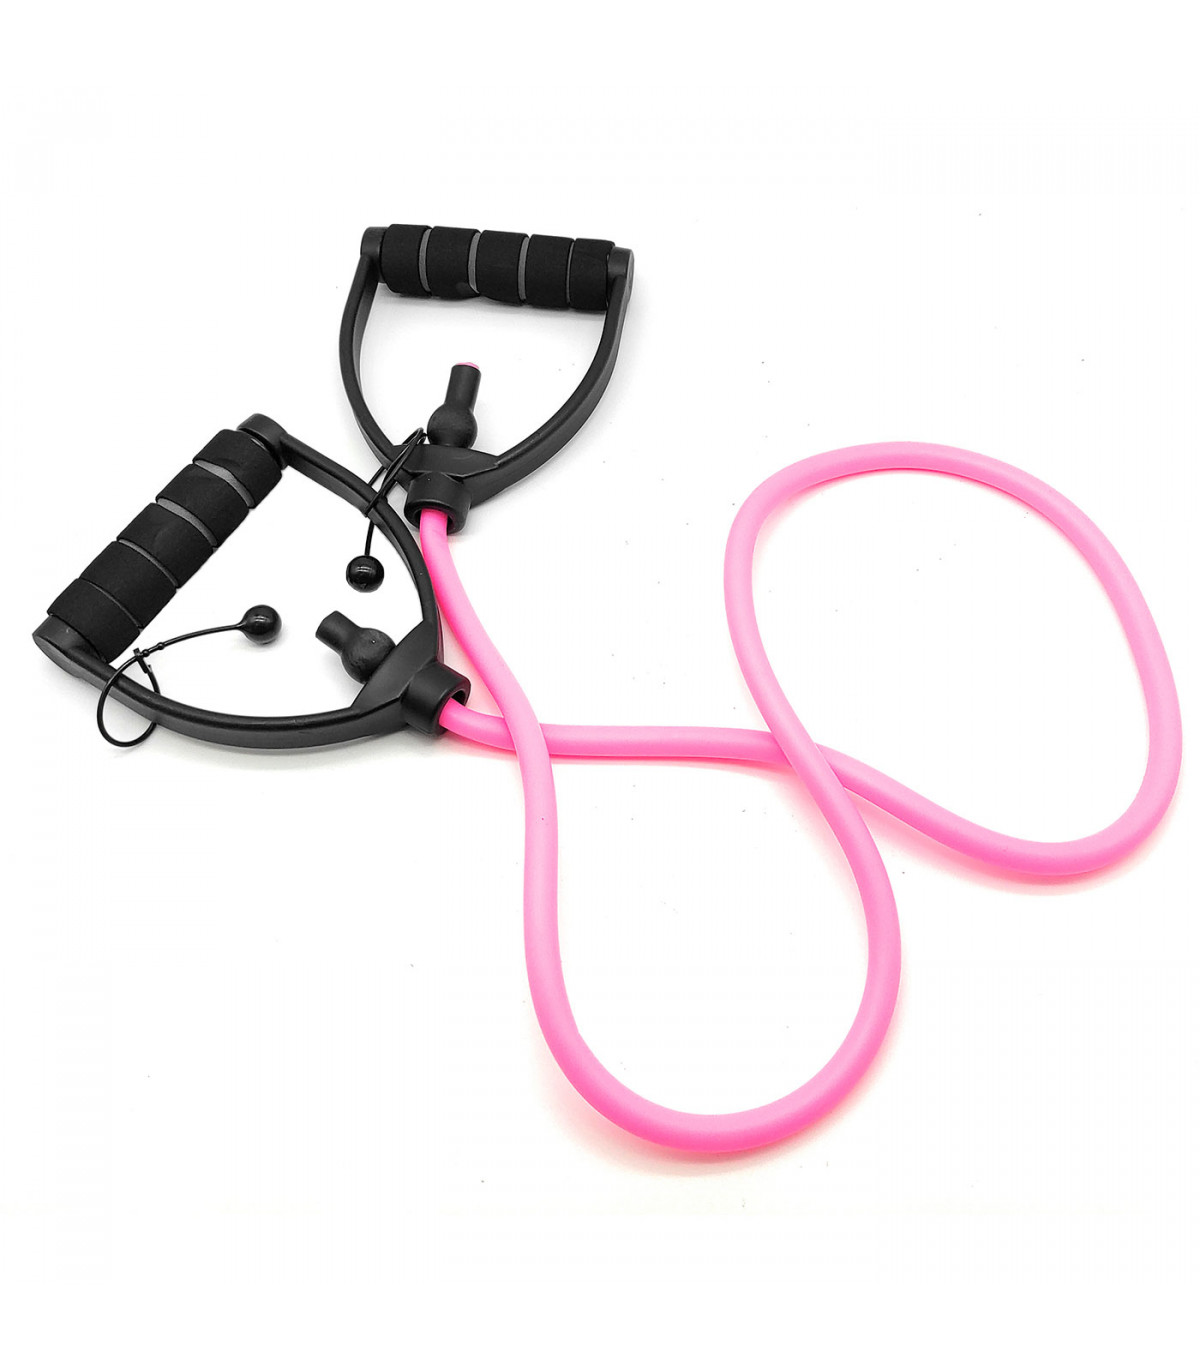 Comprar Bandas de cuerda de tensión multifunción para ejercicios de fitness  Cinta elástica Bandas de resistencia caseras Pedal elástico de 4 tubos